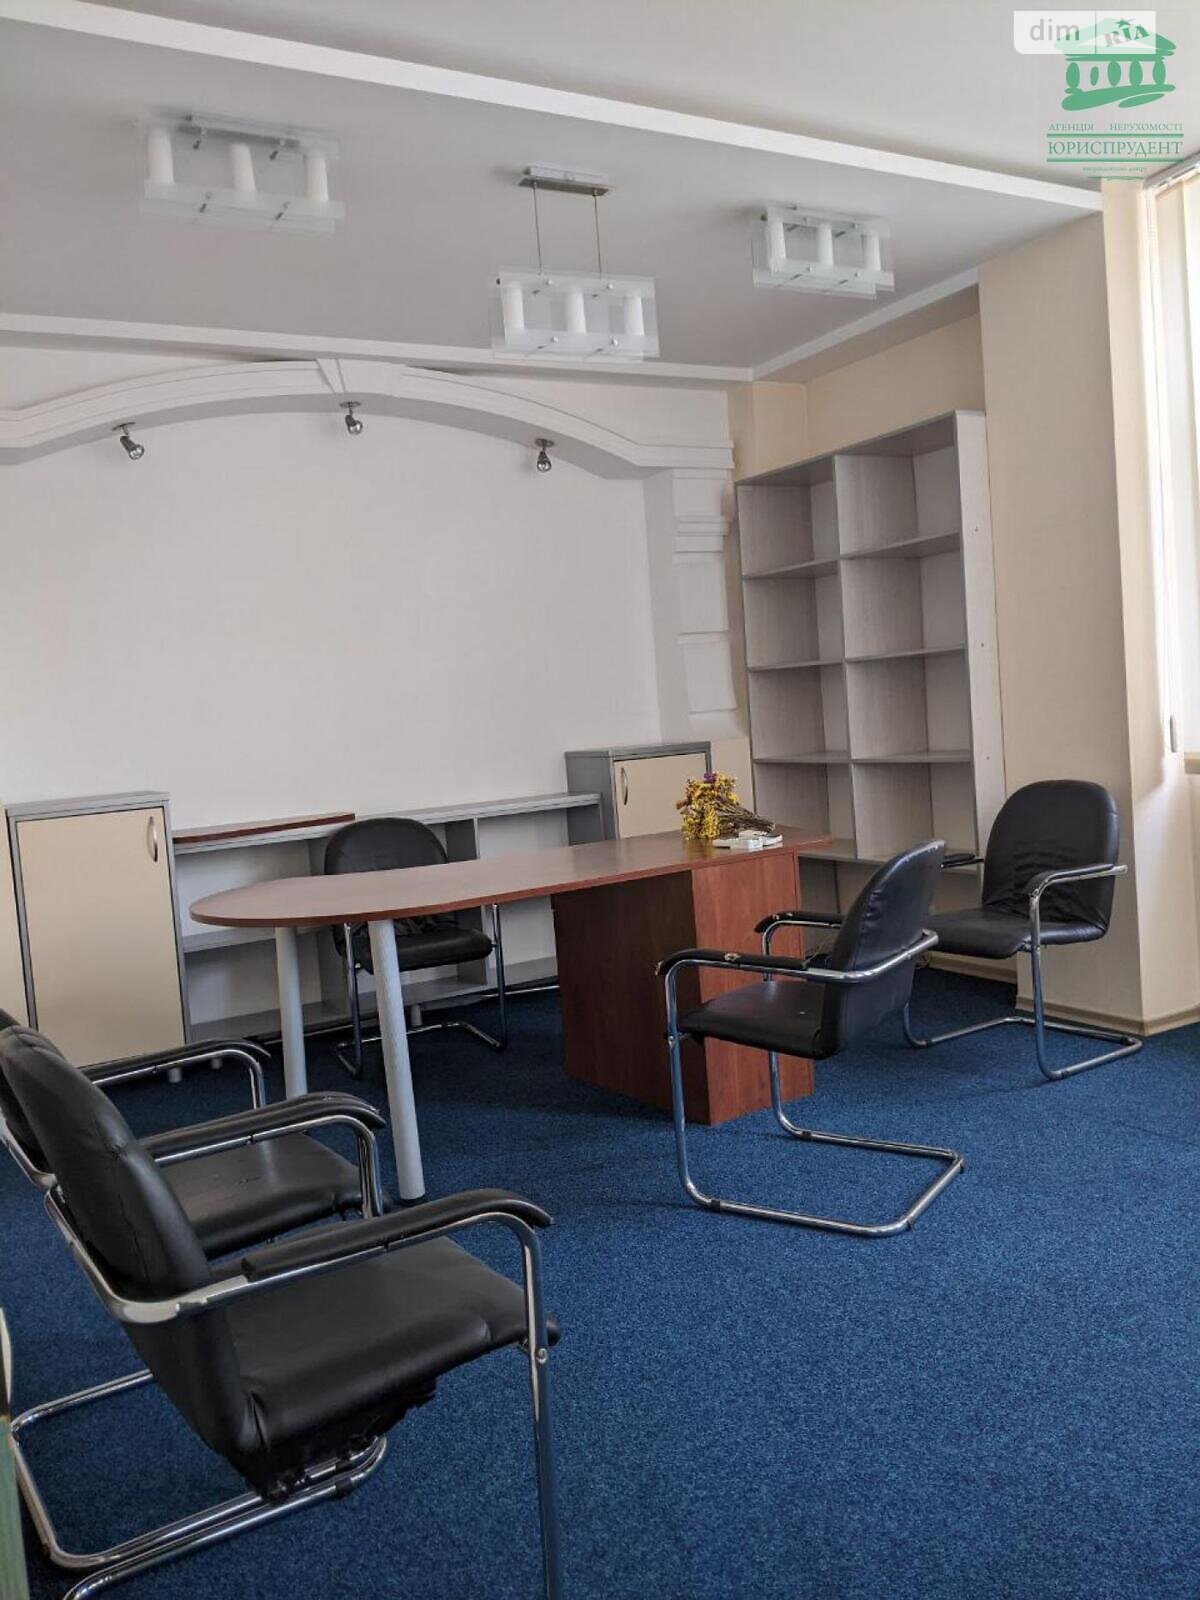 Аренда офисного помещения в Одессе, Шевченко проспект, помещений - 3, этаж - 3 фото 1